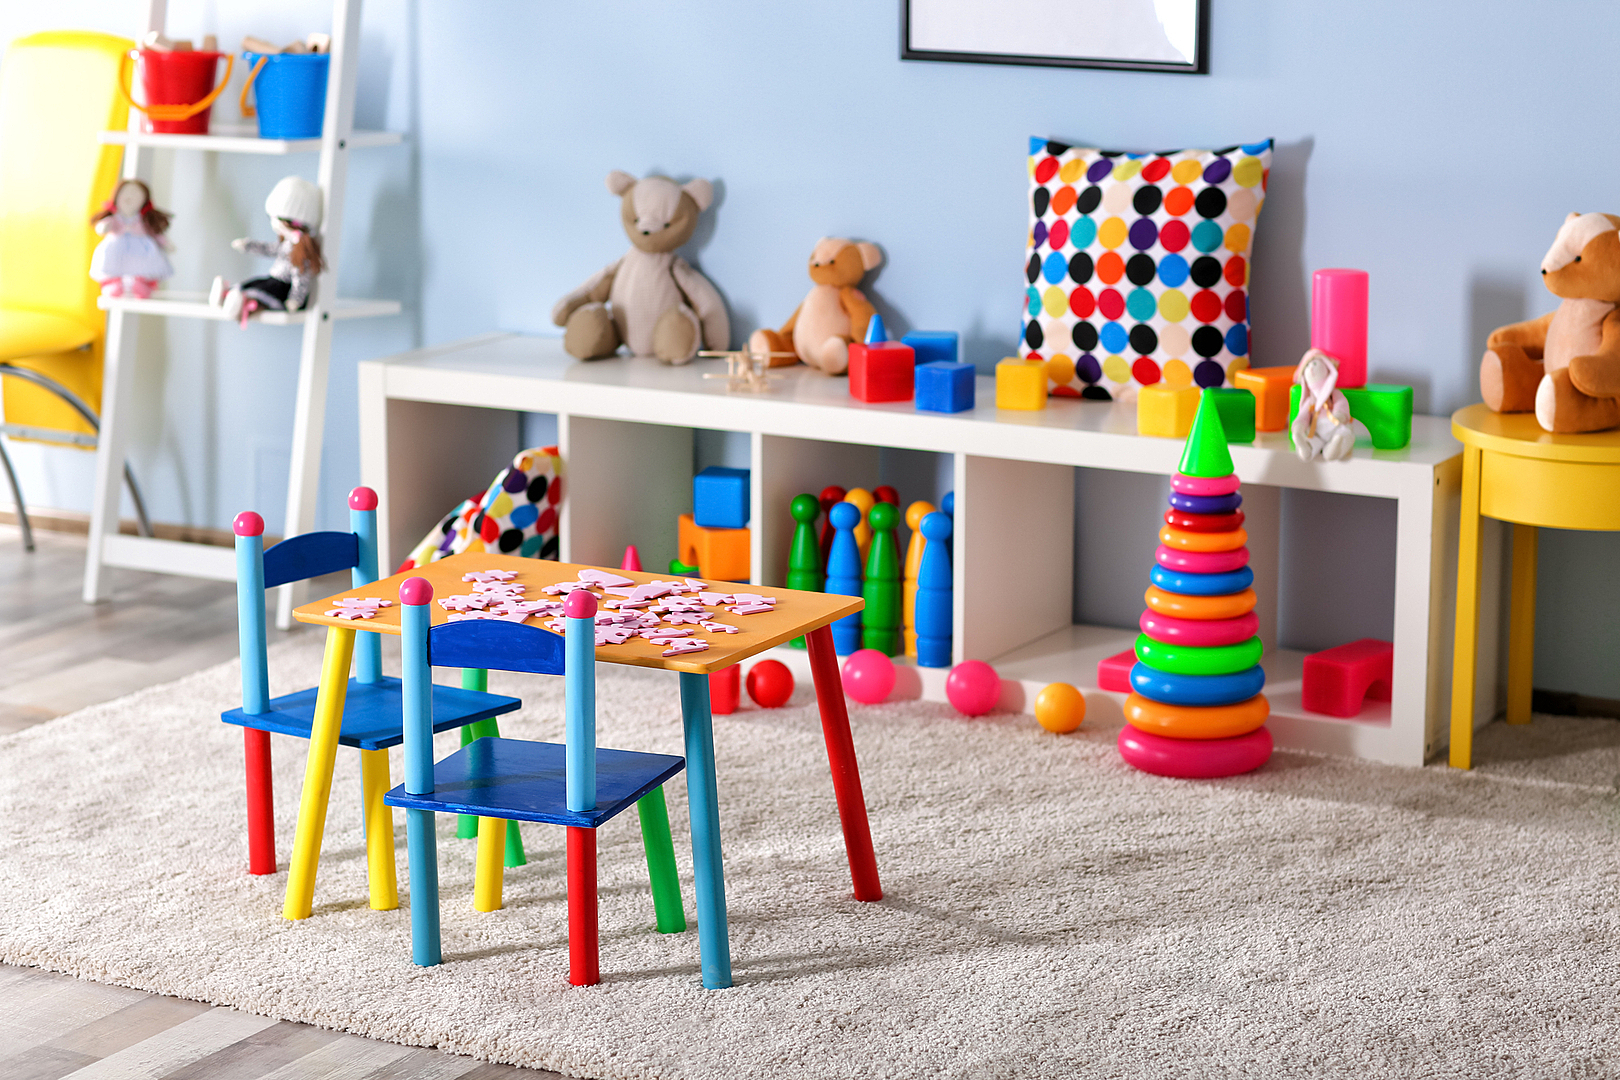 Bedroom toys. Детские игрушки в комнате. Игрушки для игровой комнаты. Комната с игрушками. Игрушки в интерьере.